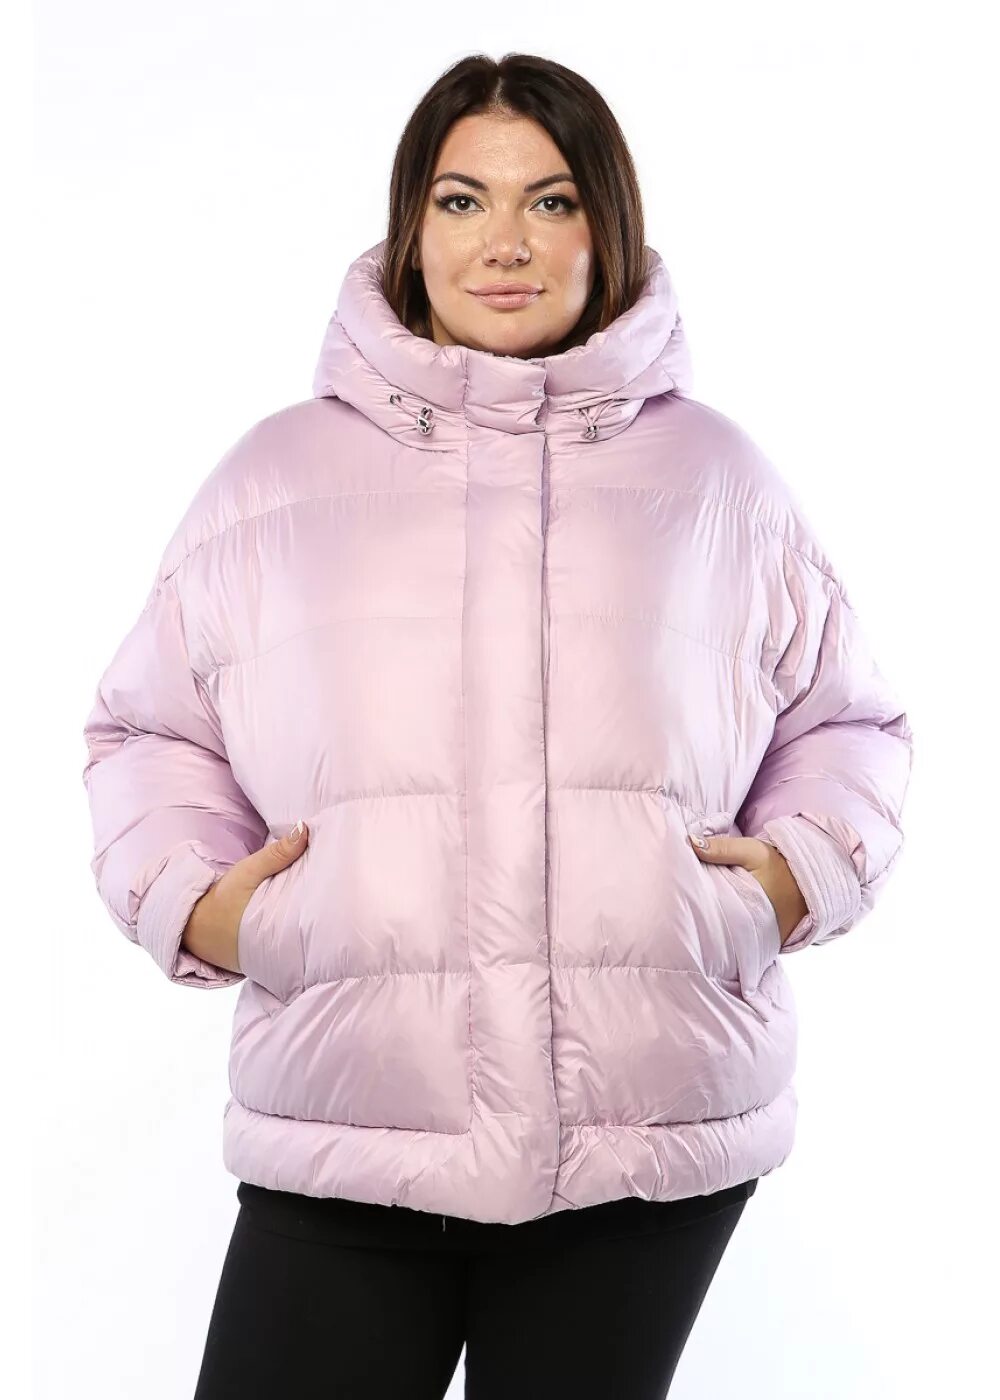 Зимняя куртка женская валберис 62 размер. Пальто Rufuete женские. Куртки для полных женщин. Куртки женские для полных.